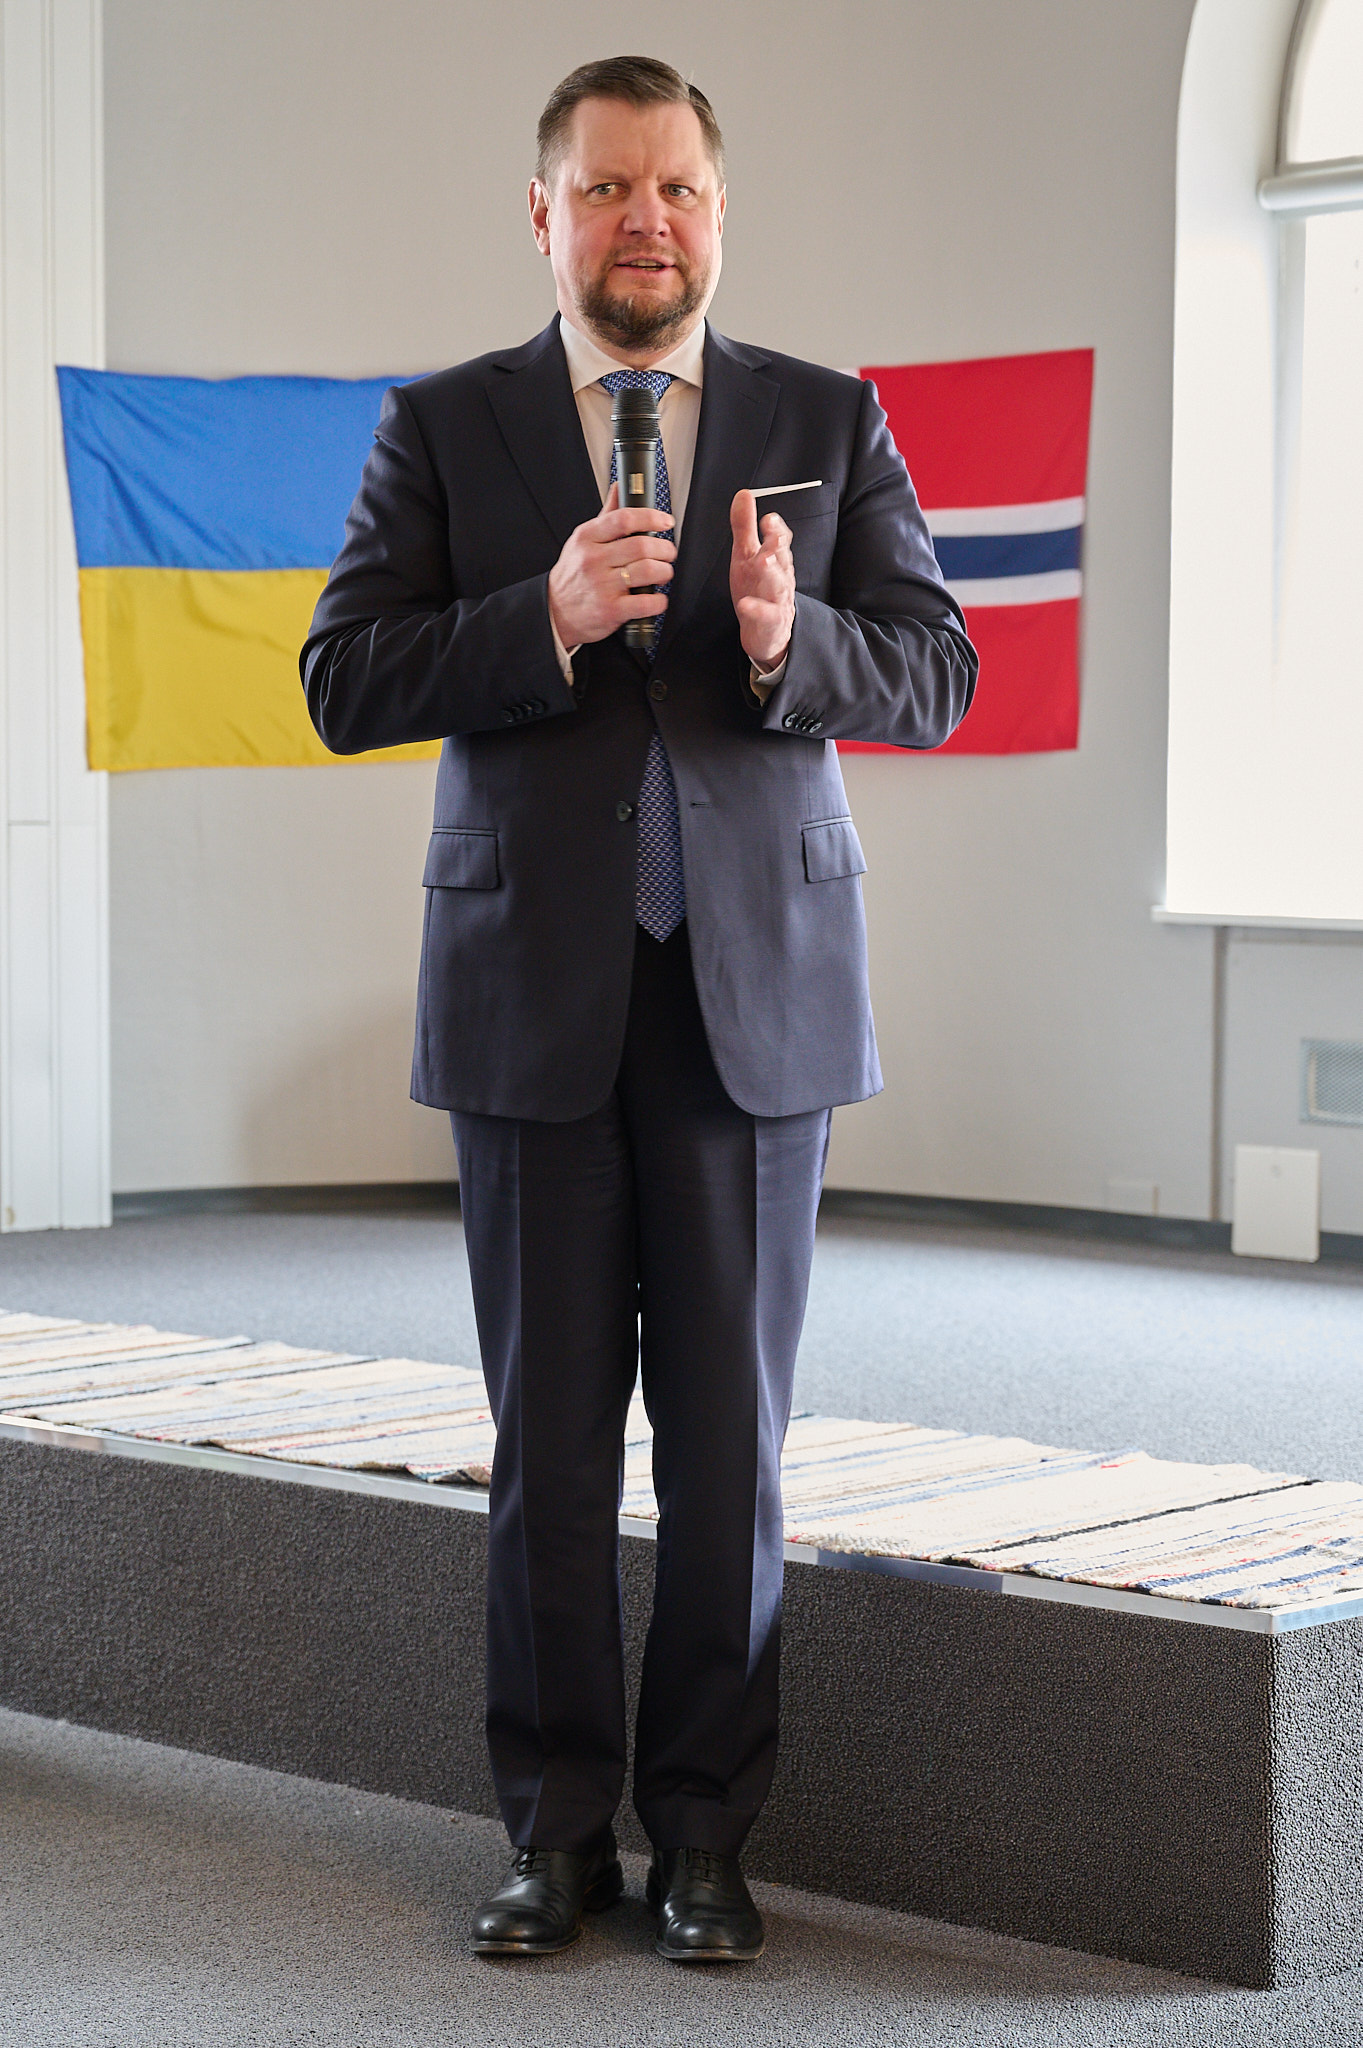 Ukrainas ambassadør Vlacheslav Yatsluk gratulerte og takket alle som har bidratt til å virkeliggjøre den nye møteplassen. Foto: Willy Fredriksen